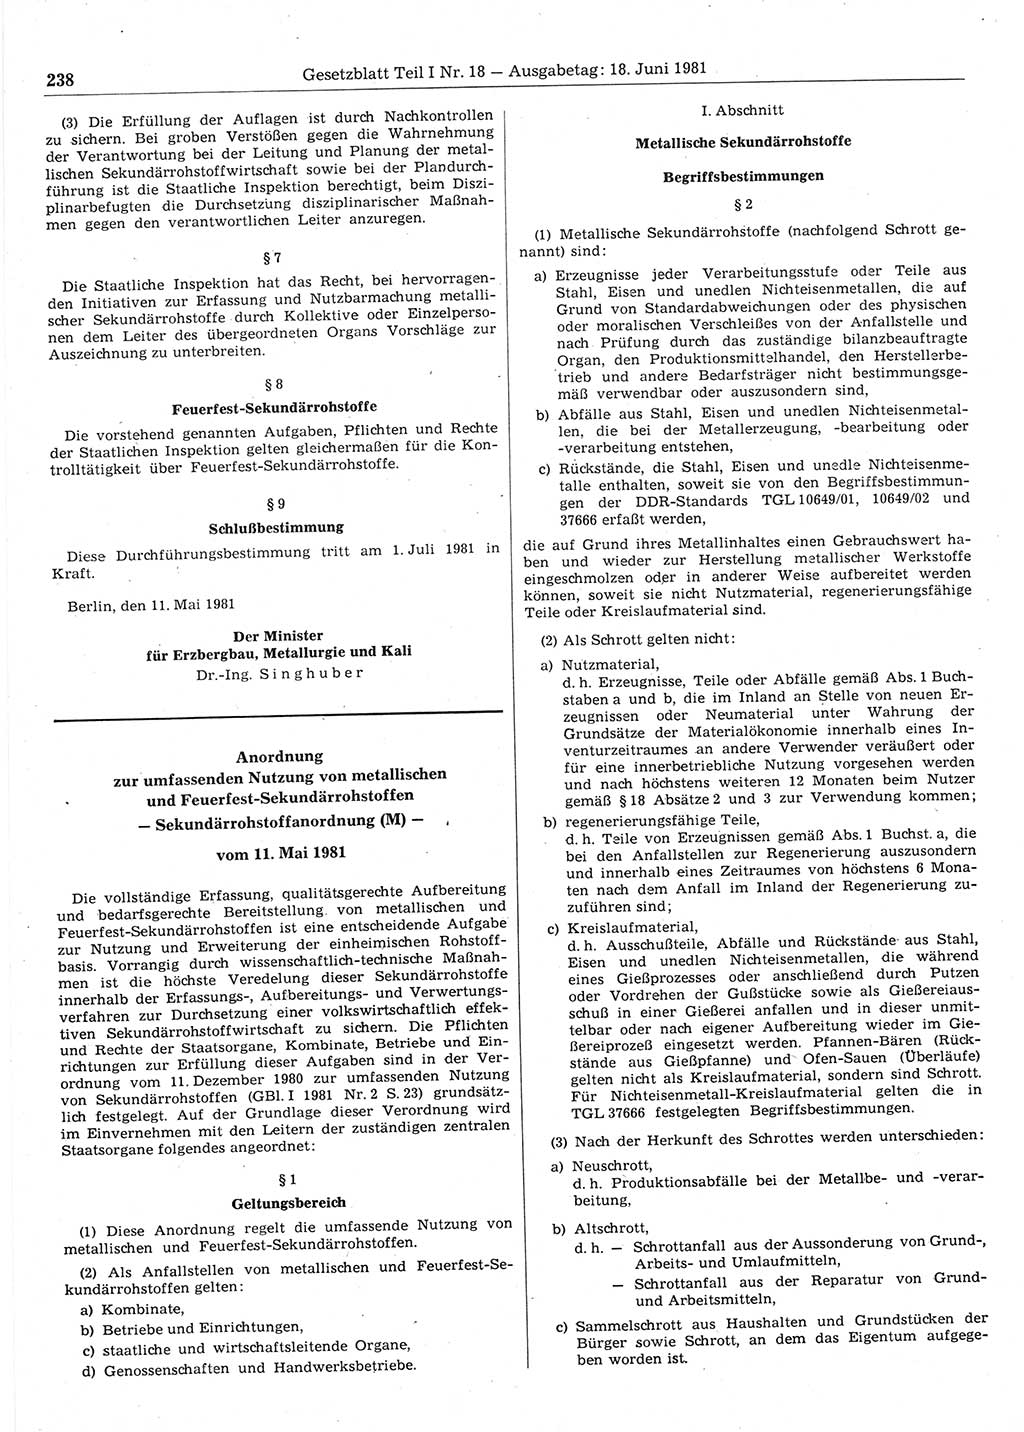 Gesetzblatt (GBl.) der Deutschen Demokratischen Republik (DDR) Teil Ⅰ 1981, Seite 238 (GBl. DDR Ⅰ 1981, S. 238)